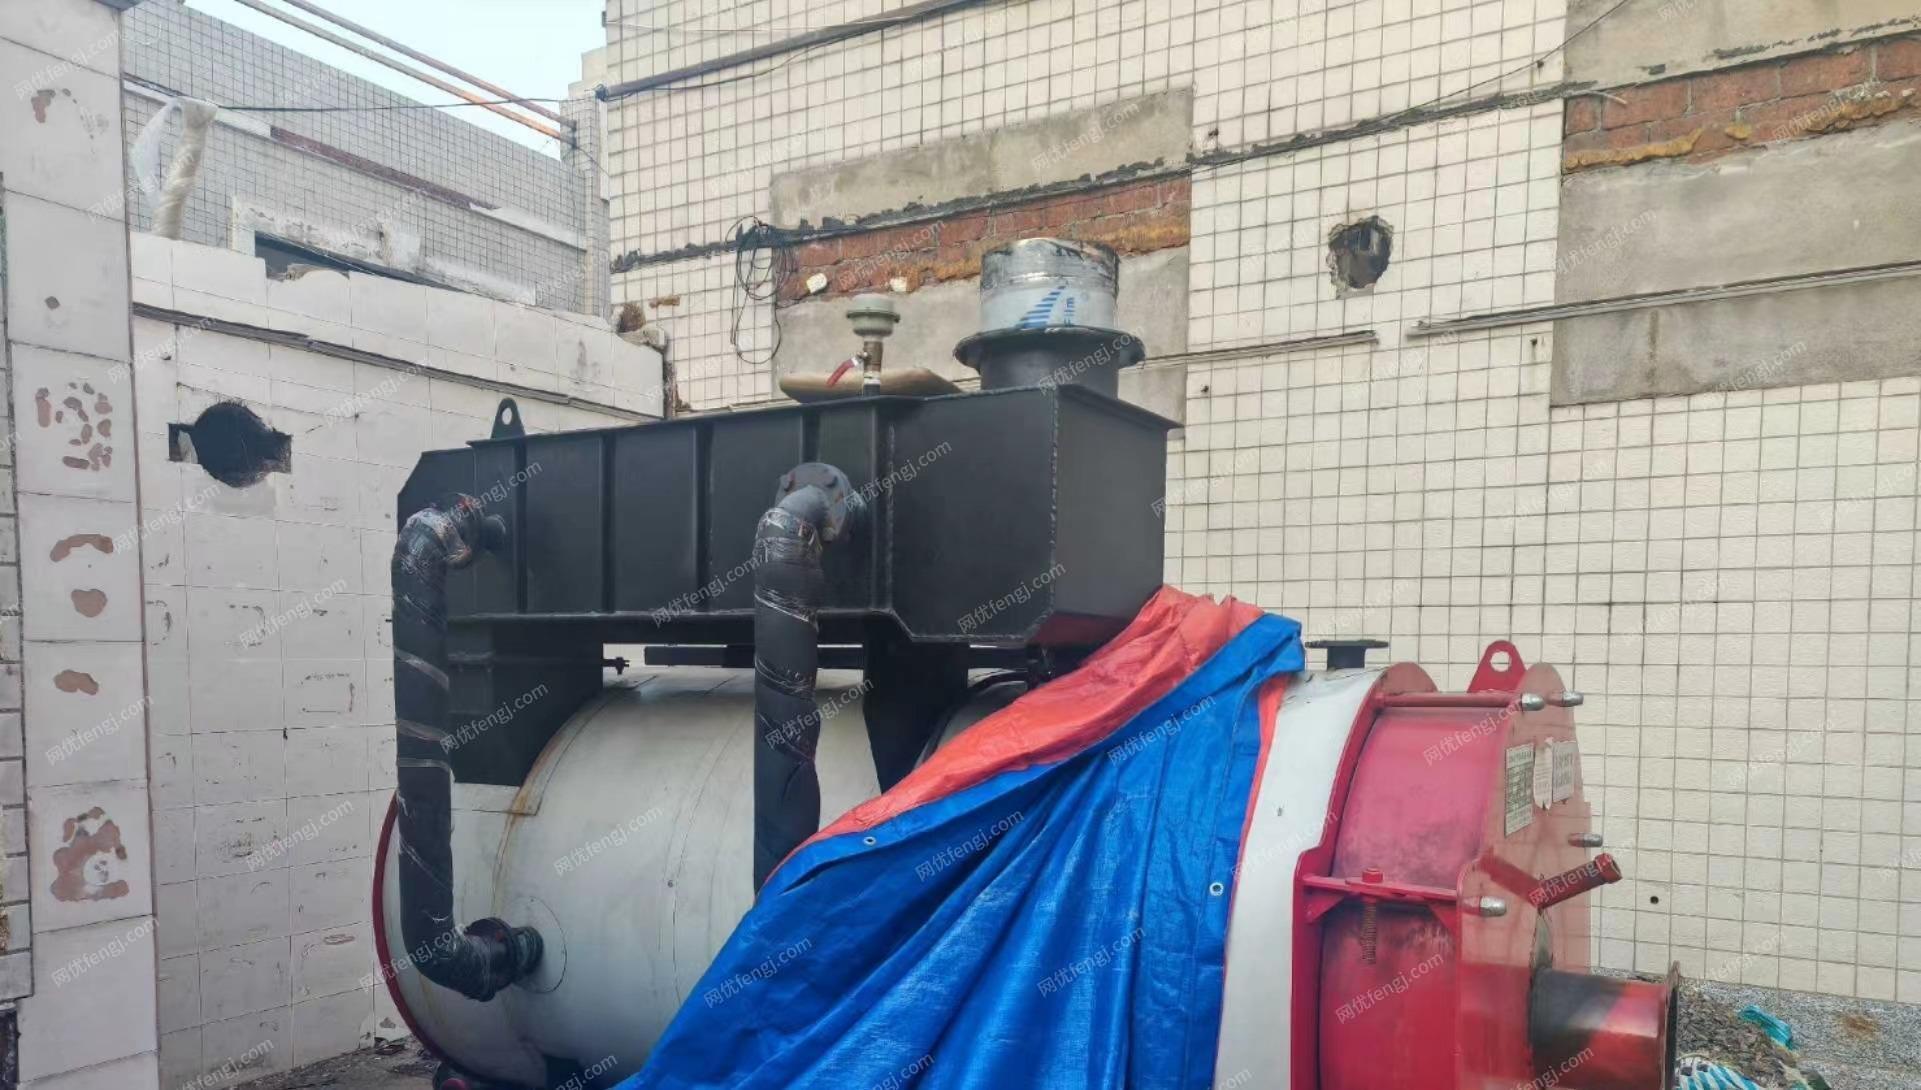 黑龙江哈尔滨出售使用两年的燃气(油）常压热水锅炉